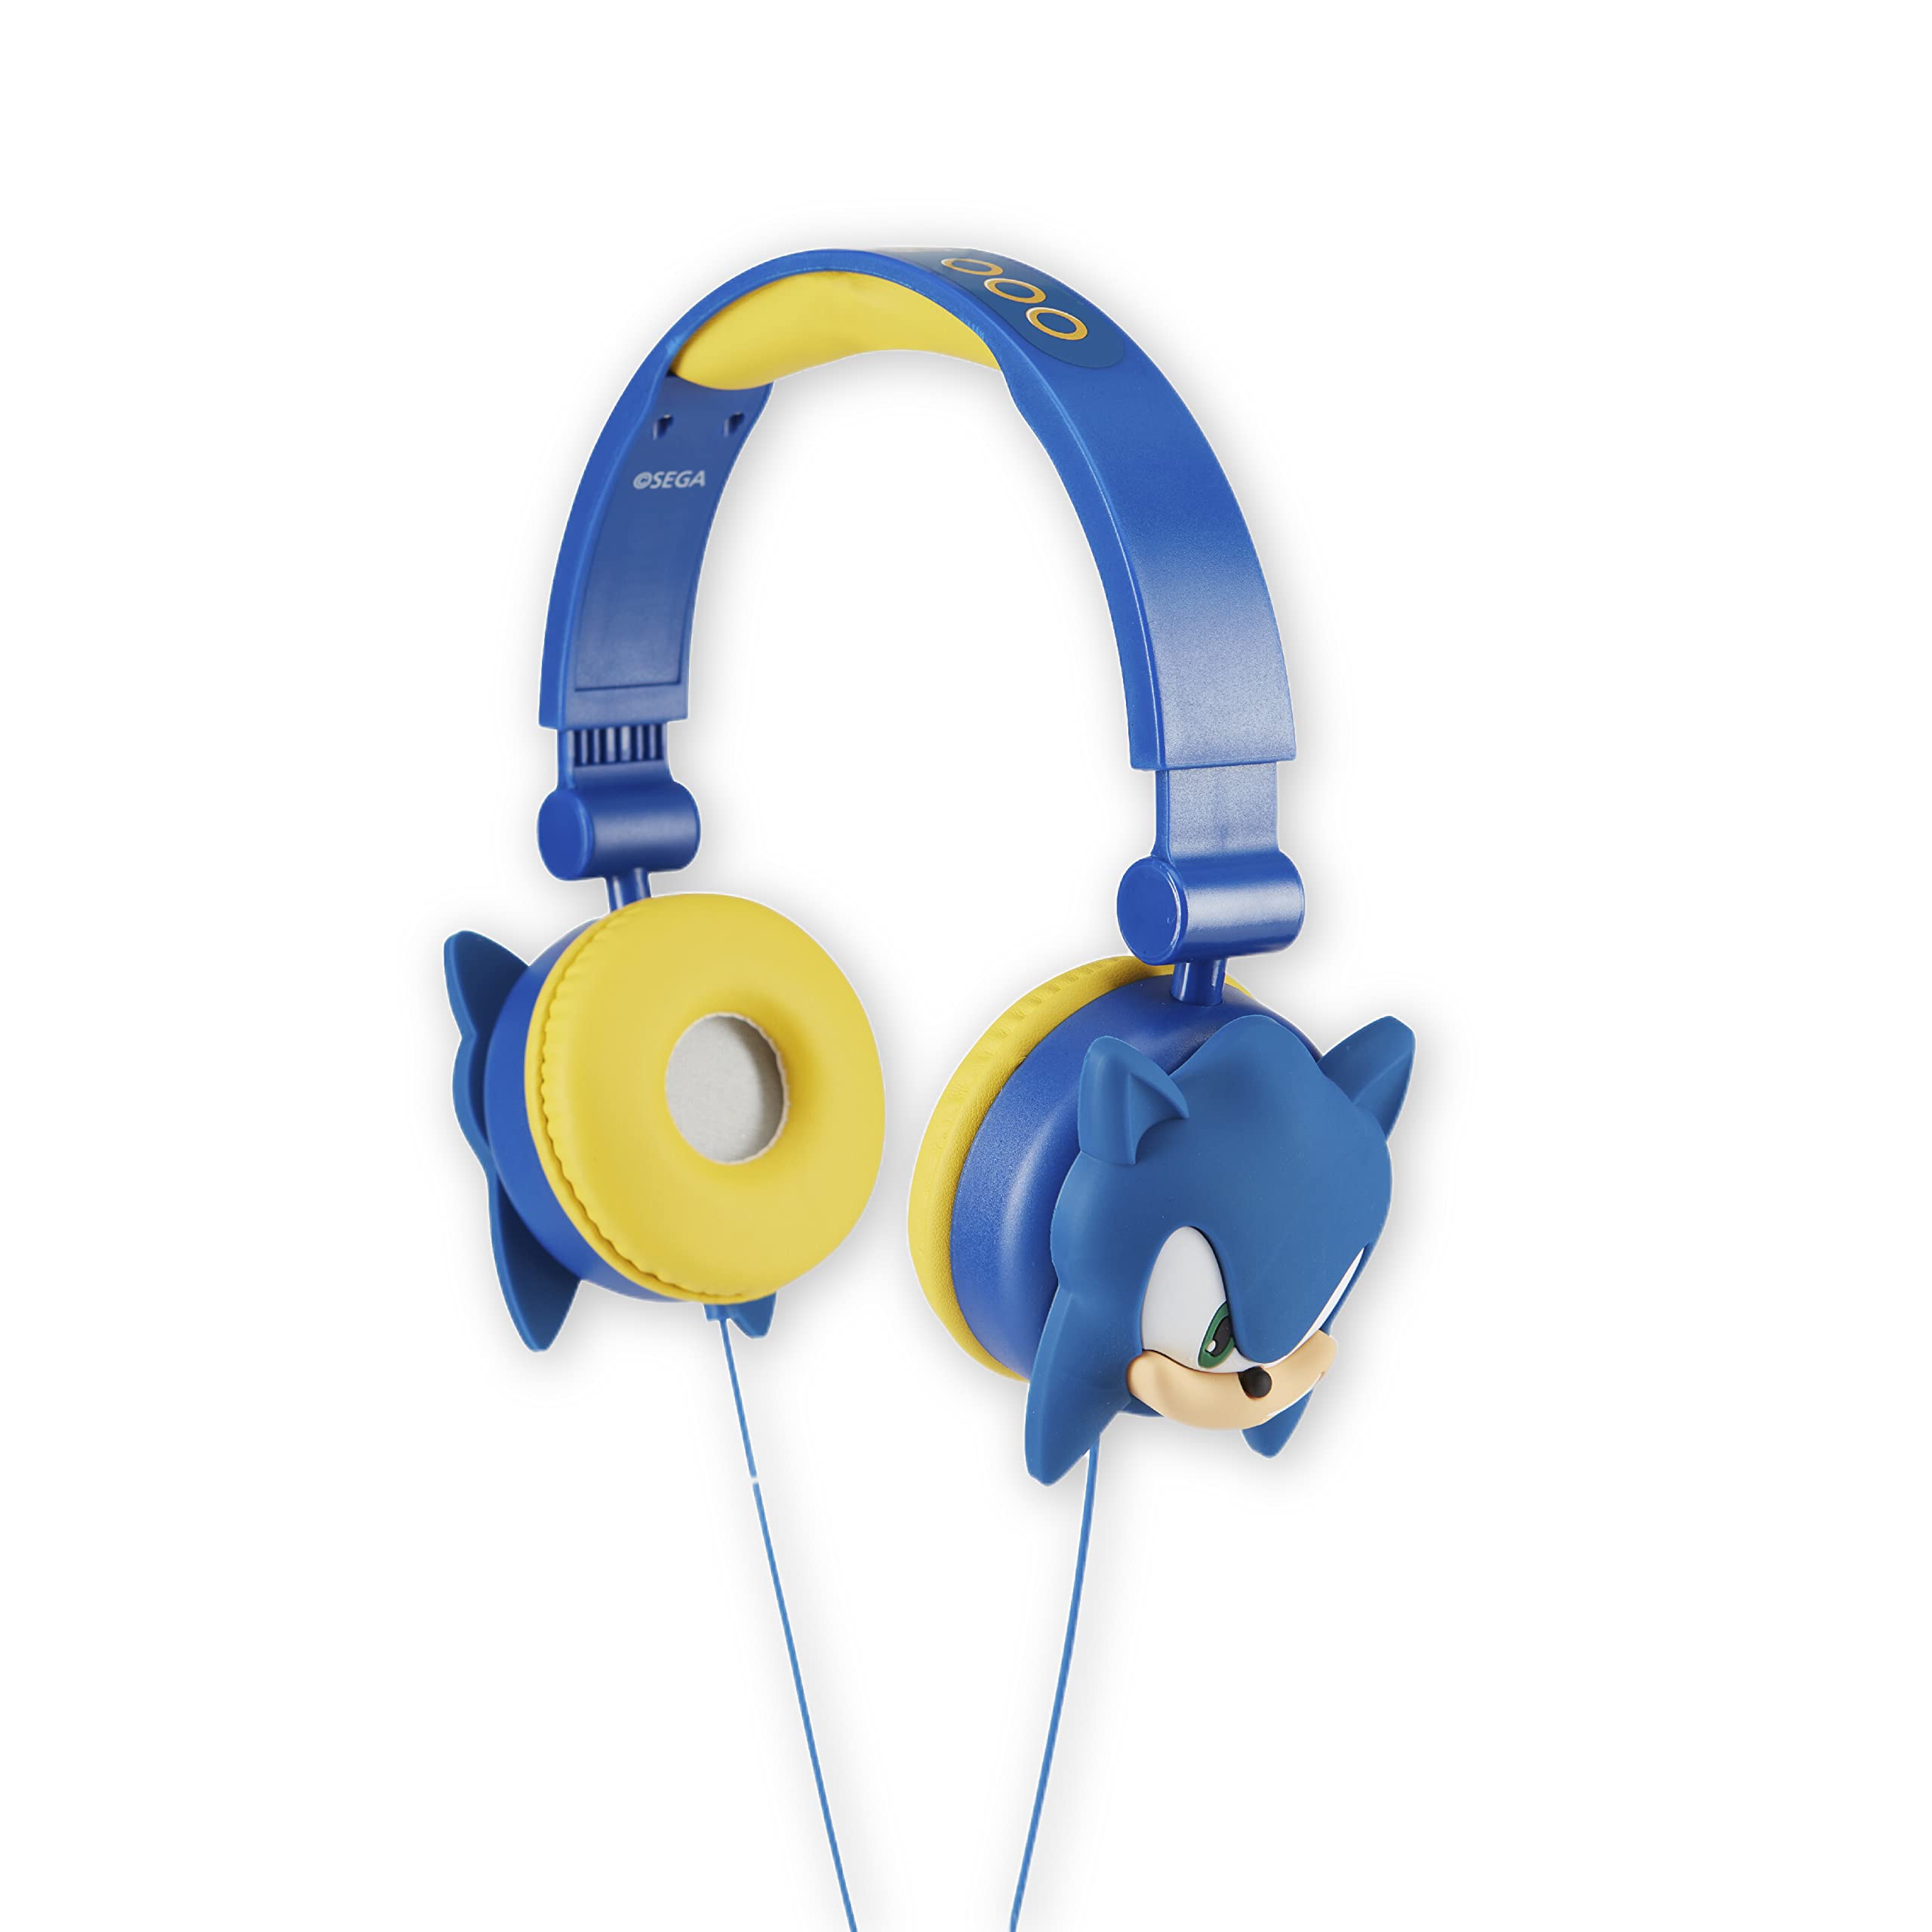 Sakar Sonic The Hedgehog 儿童头戴式耳机 - 可调节头带、立体声、防缠结线缆、音量控制和 3.5 毫米插孔 - 非常适合学校、家庭和旅行